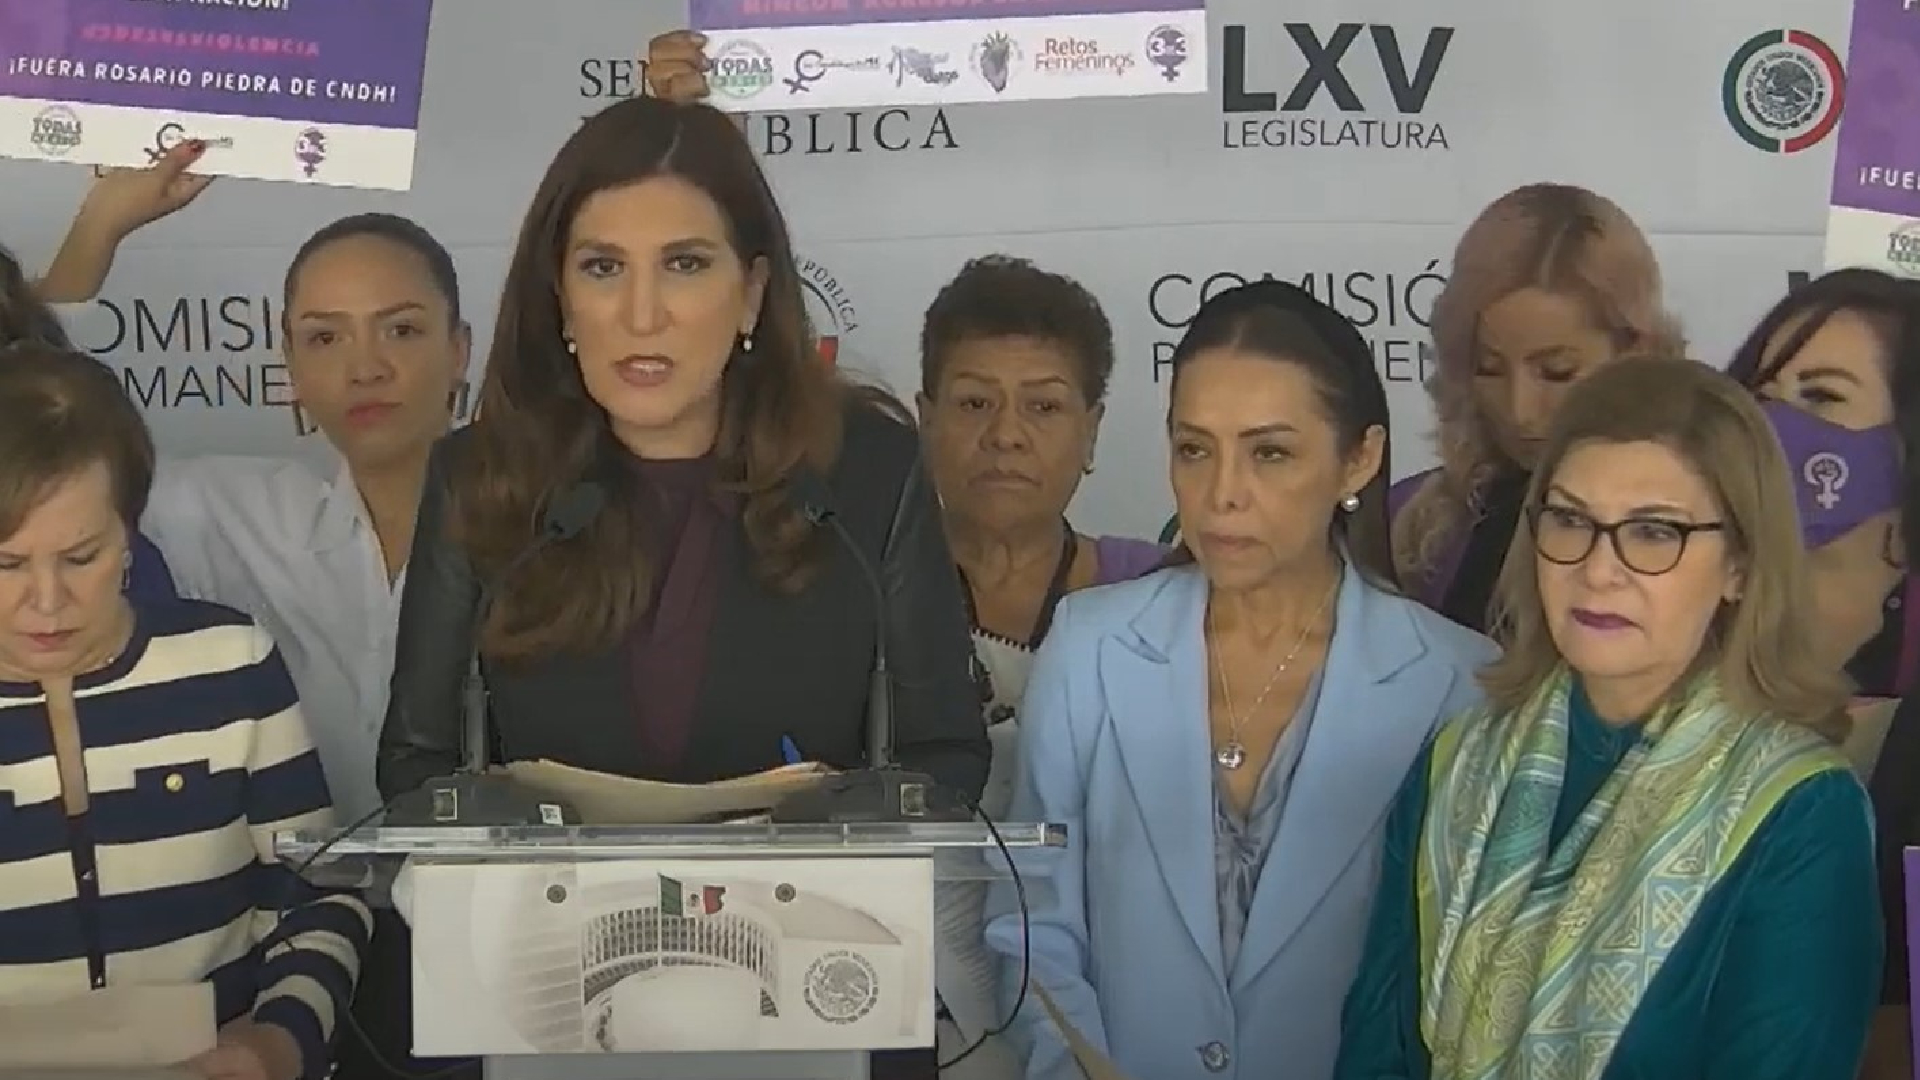 Feministas, encabezadas por mujeres del PAN, exigieron la renuncia de Rosario Piedra de la CNDH